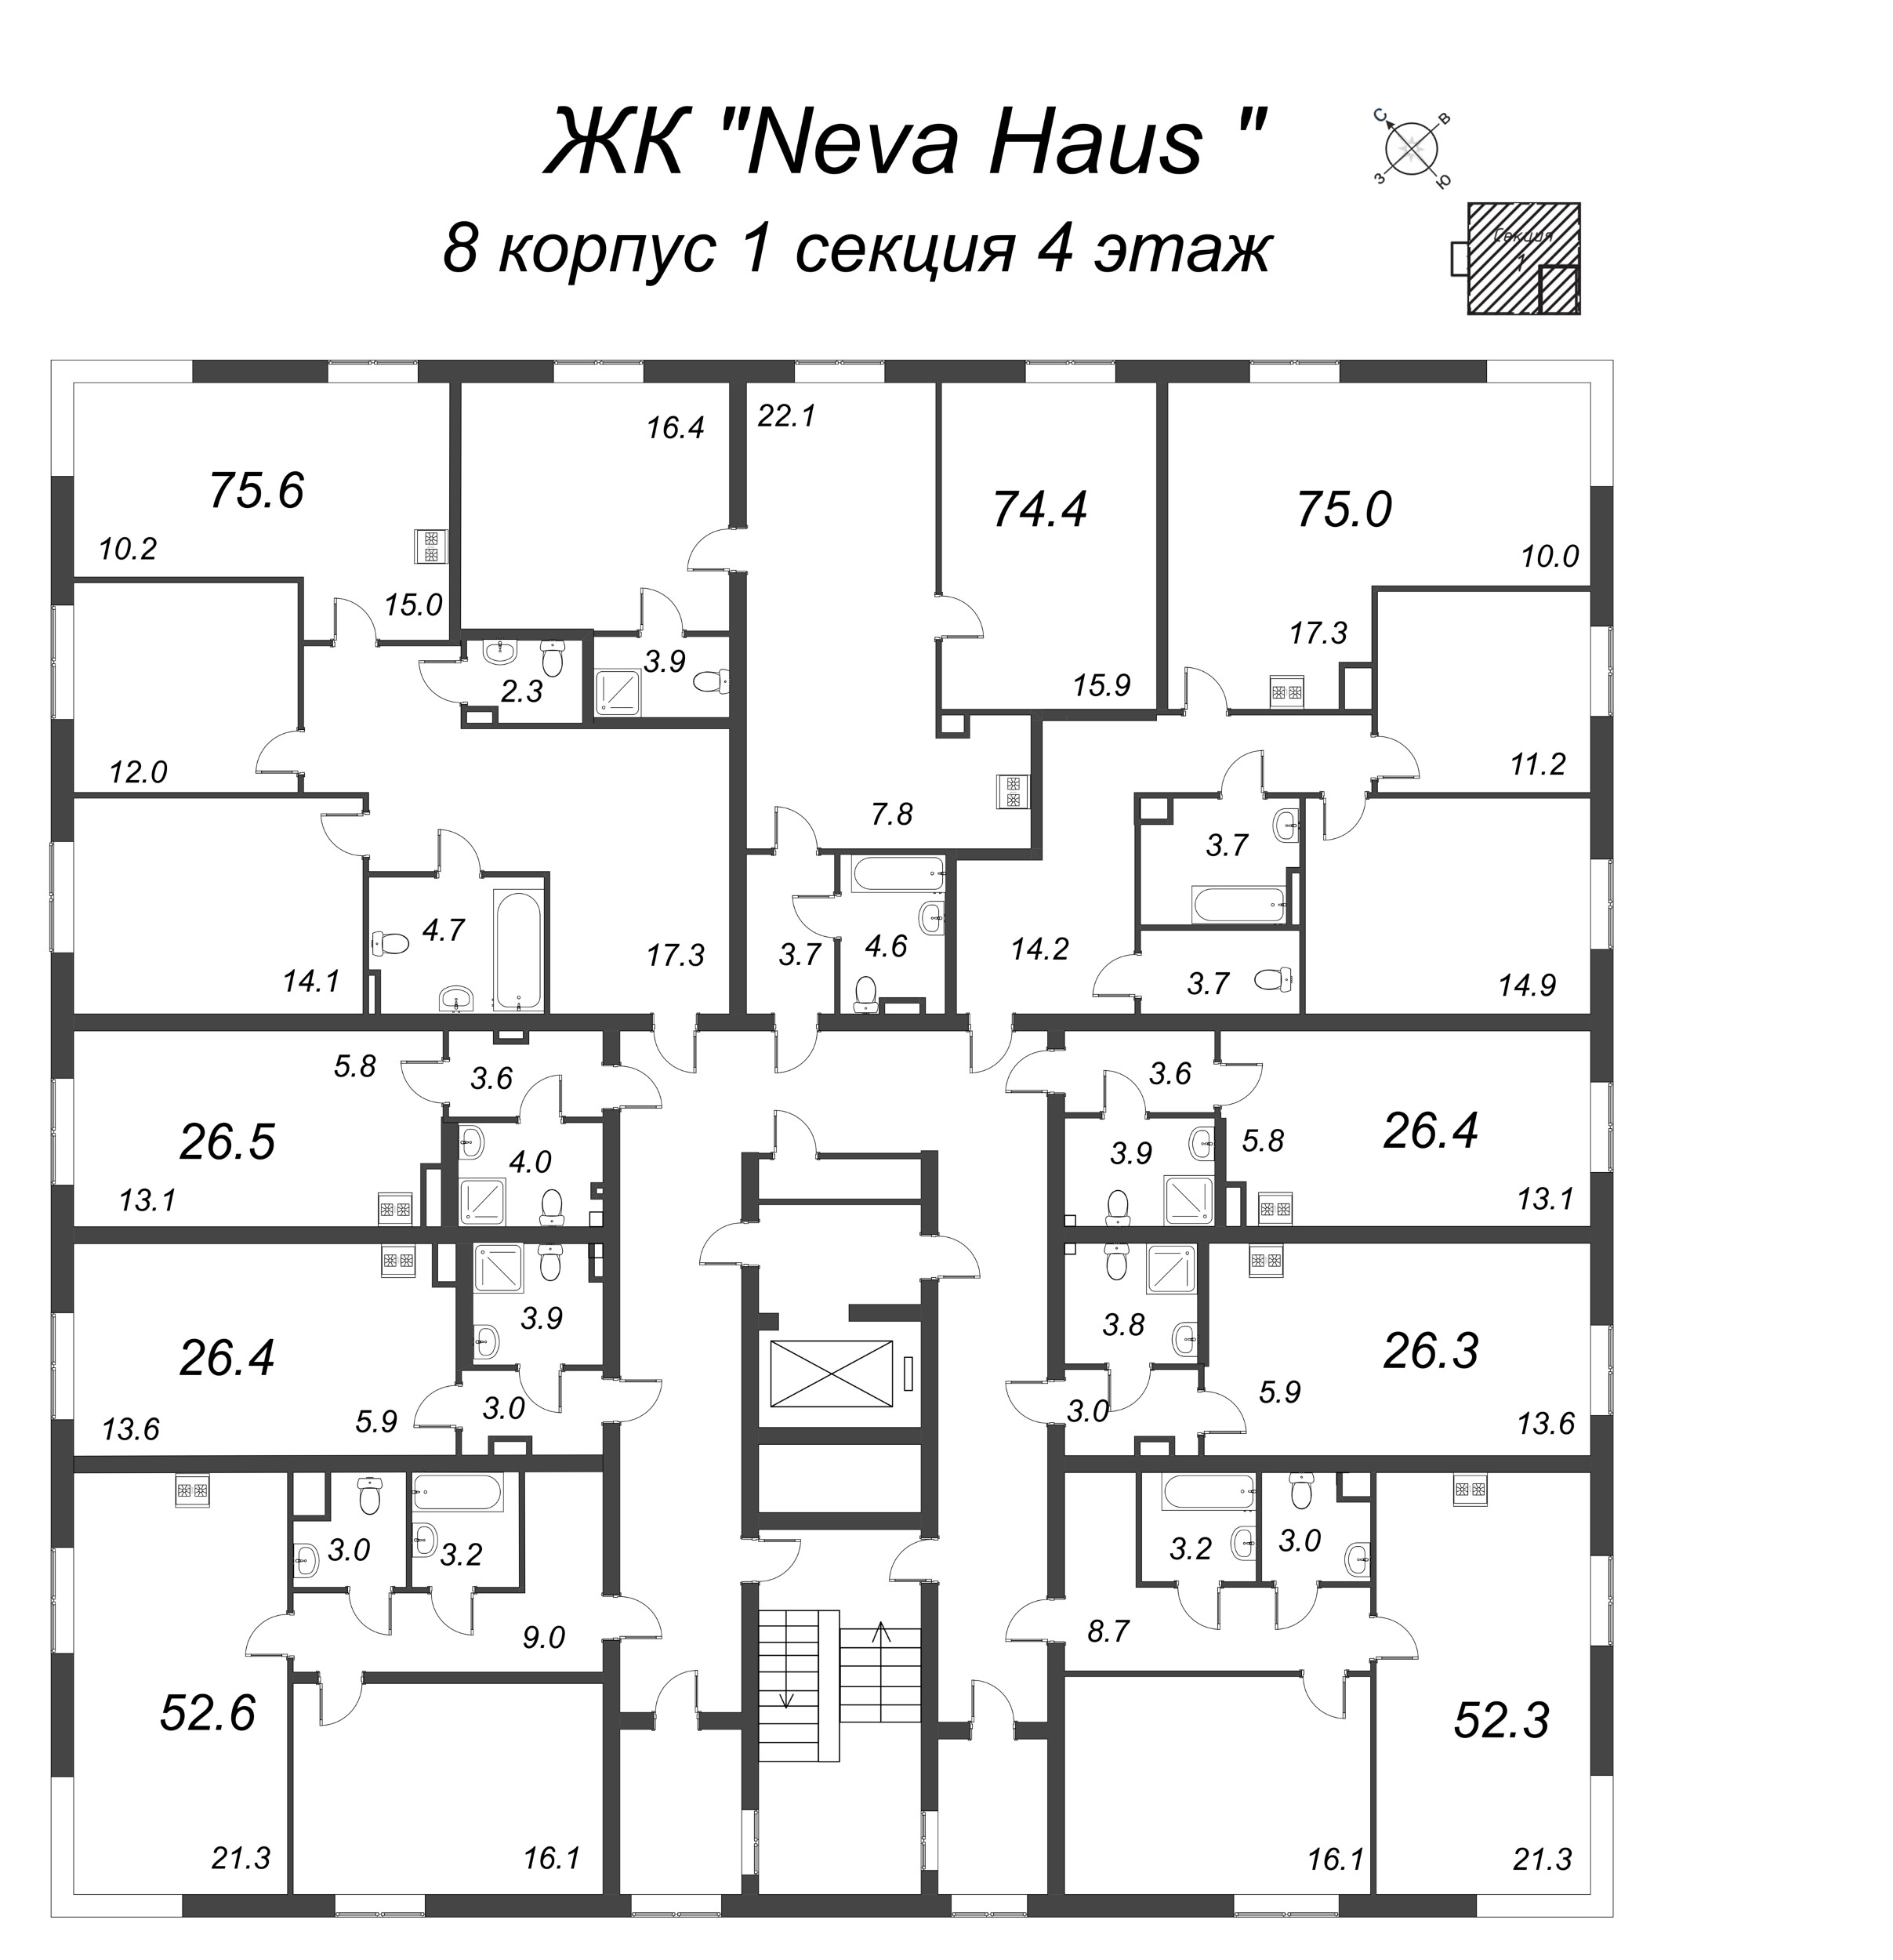 3-комнатная (Евро) квартира, 74.9 м² в ЖК "Neva Haus" - планировка этажа